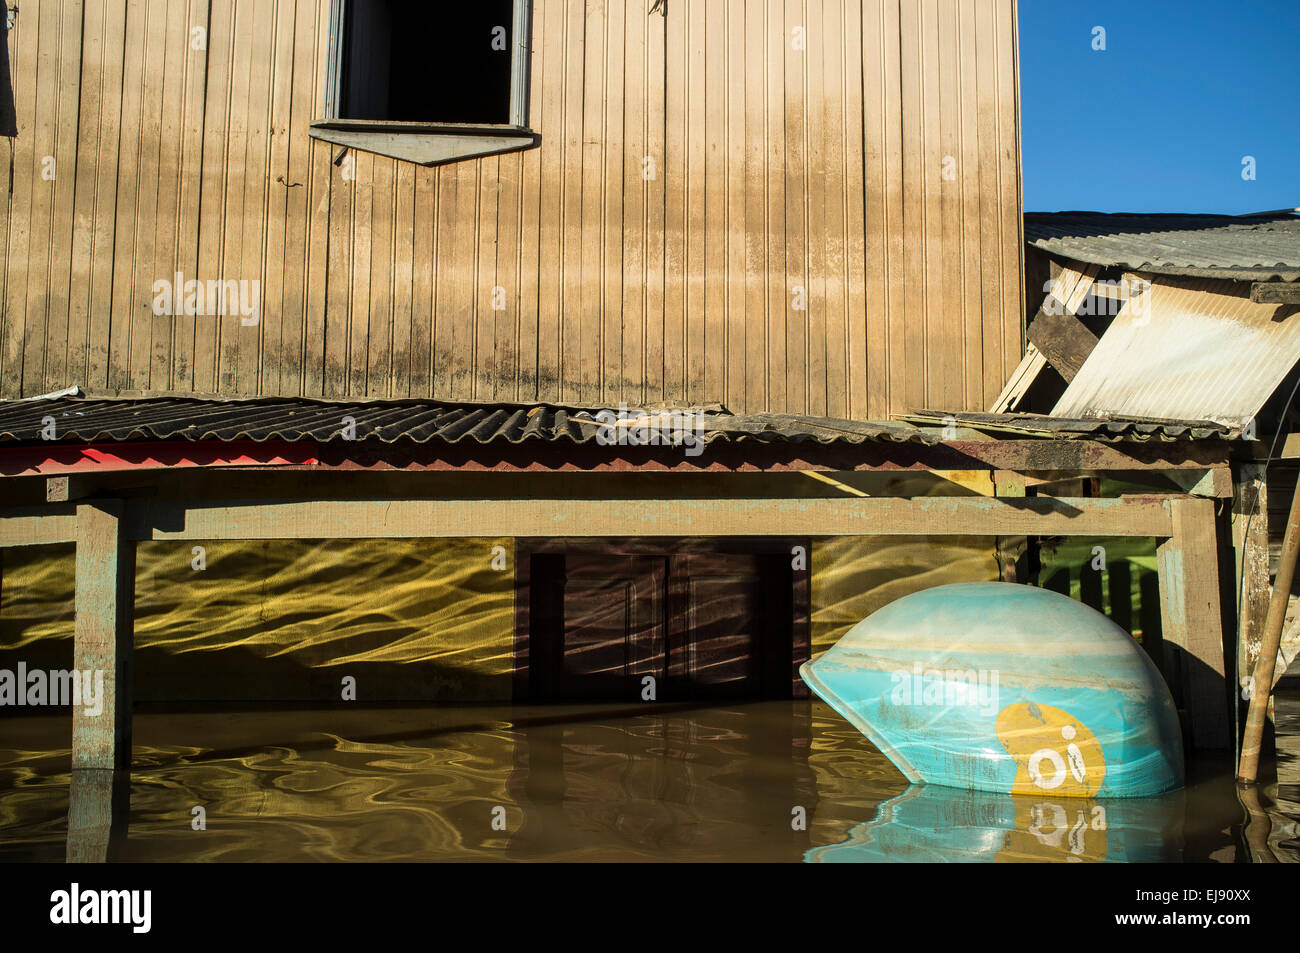 2015 Überschwemmungen im brasilianischen Amazonasgebiet. Haus im Triangulo Novo Bezirk, Rio Branco Stadt, Bundesstaat Acre und überfluteten Telefonzelle. Überschwemmungen haben Tausende von Menschen im Bundesstaat Acre, Nordbrasilien, seit 23. Februar 2015, betroffen worden als einige der Flüsse des Landes, insbesondere Flusses Acre übergelaufen. Weitere schwere Regenfälle hat höhere Pegelstände der Flüsse noch gezwungen, und am 3. März 2015 Brasiliens Regierung erklärt den Ausnahmezustand in Acre Zustand, wo aktuelle Hochwasserlage als das Schlimmste in 132 Jahren beschrieben wurde. Stockfoto